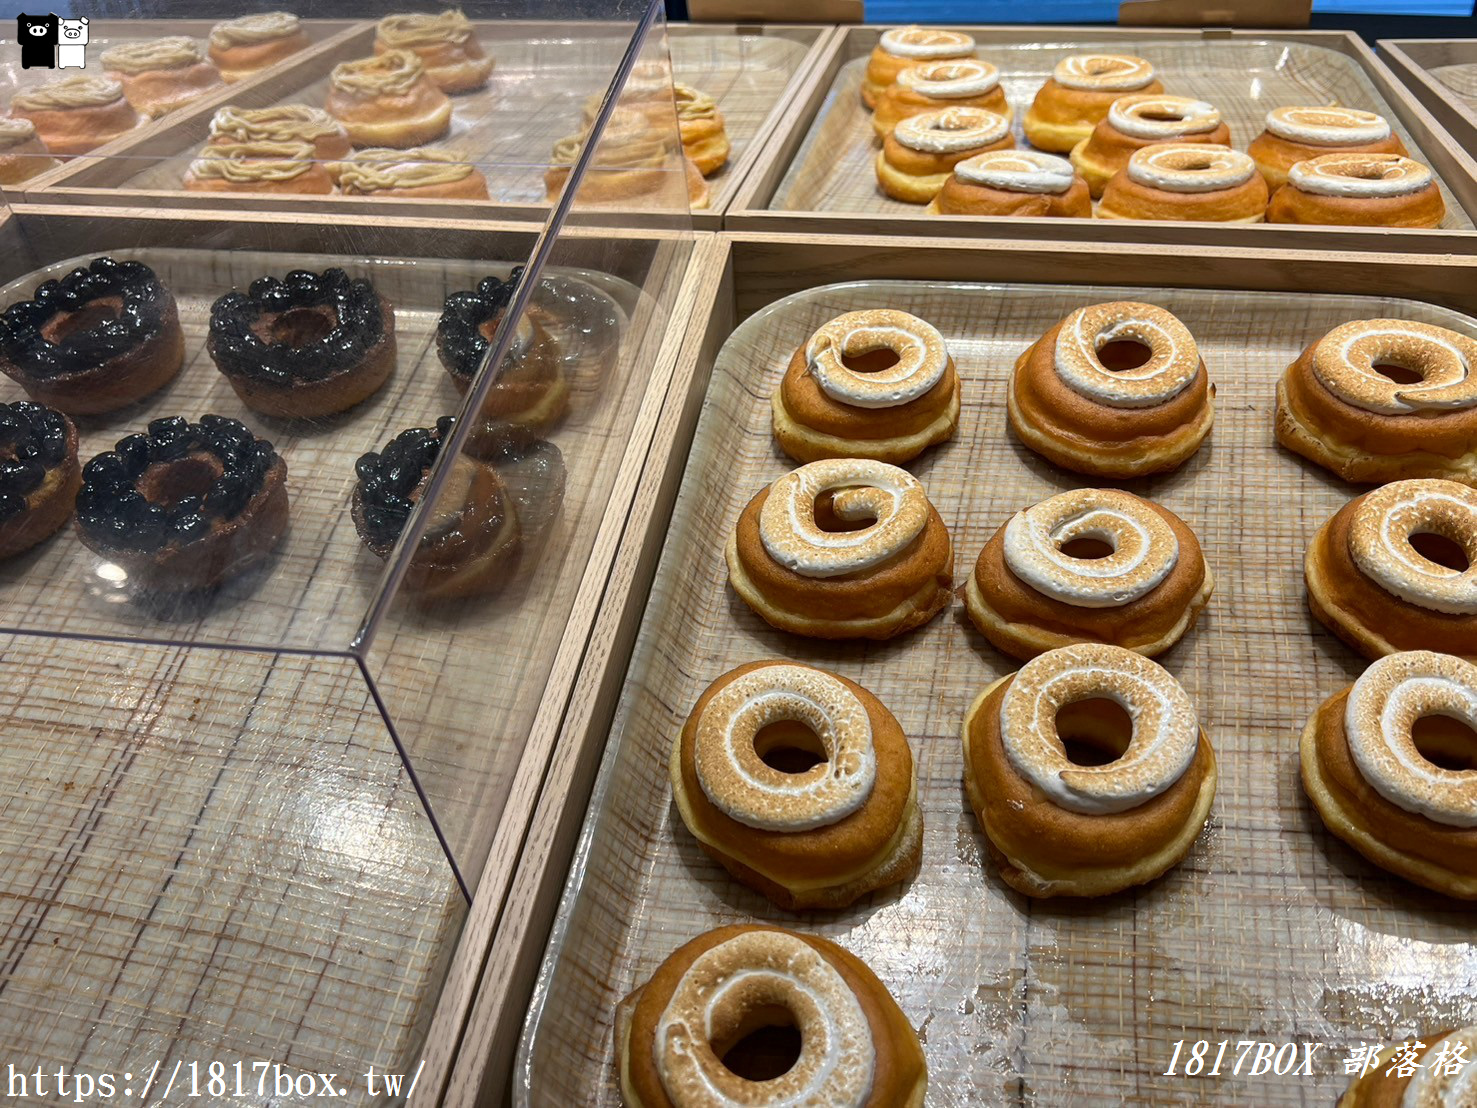 【京都美食】koé donuts 京都。koe甜甜圈京都店。IG及日本各大社群拍照打卡人氣店